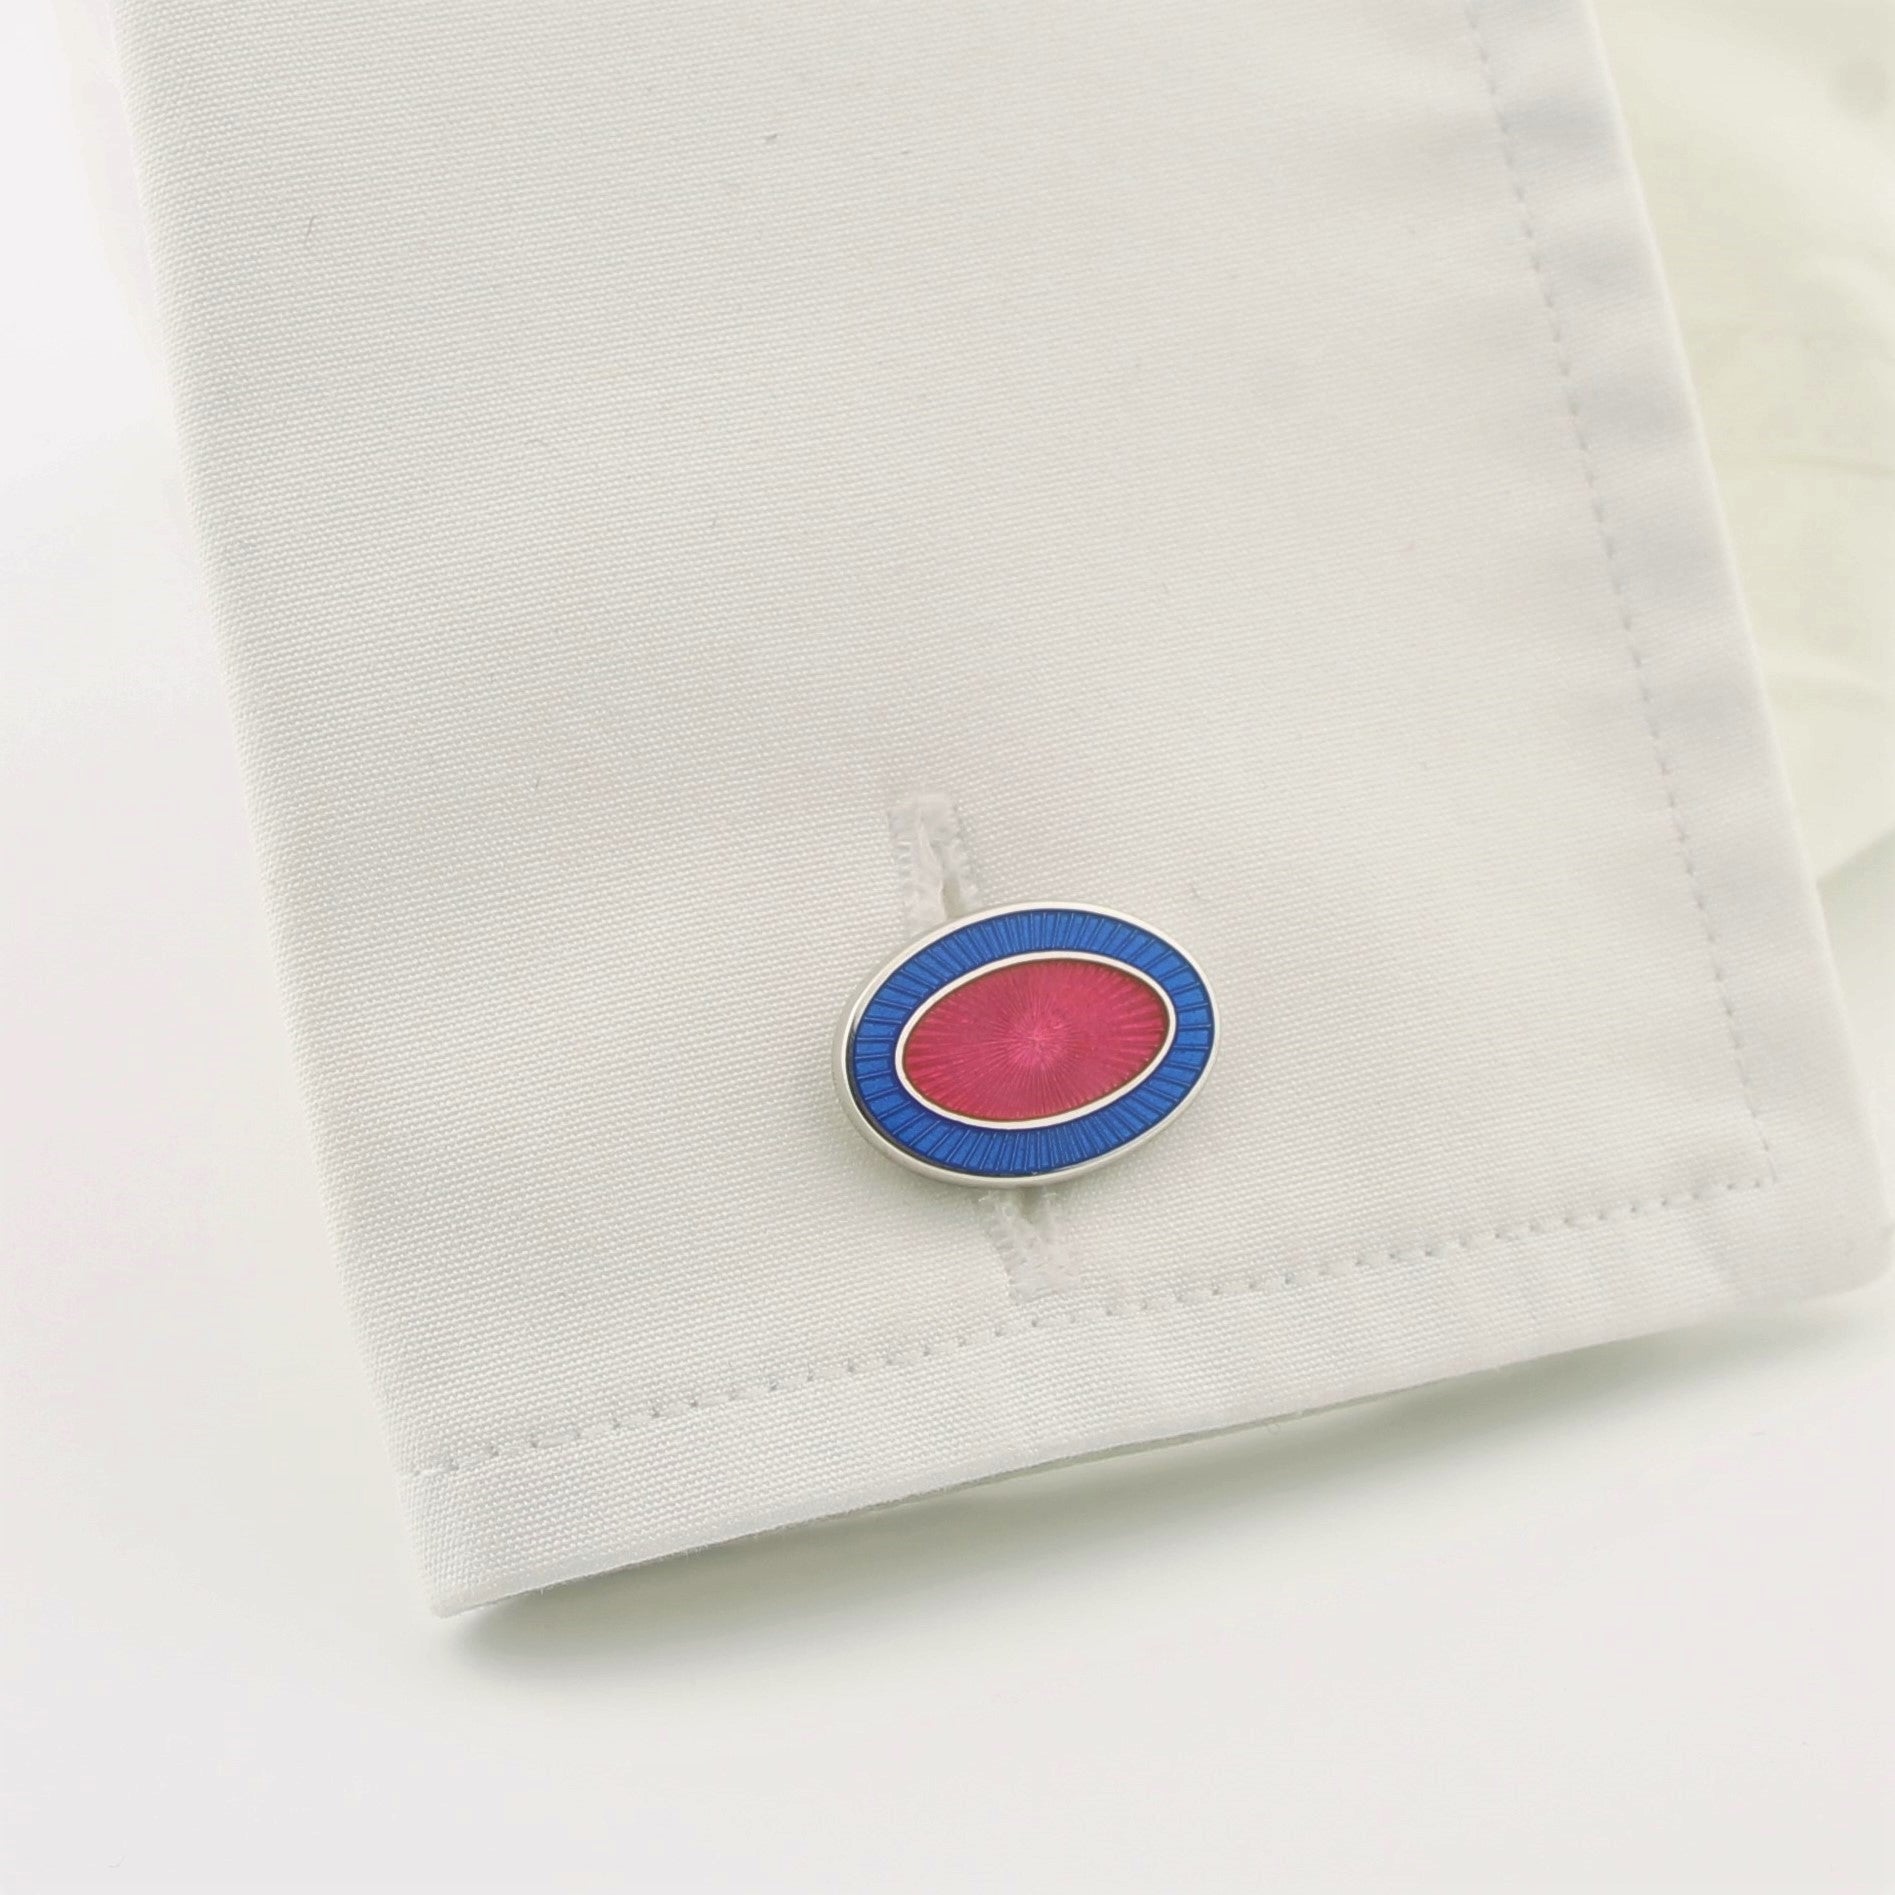 Double oval pale blue / pink enamel on T-bar - cuff